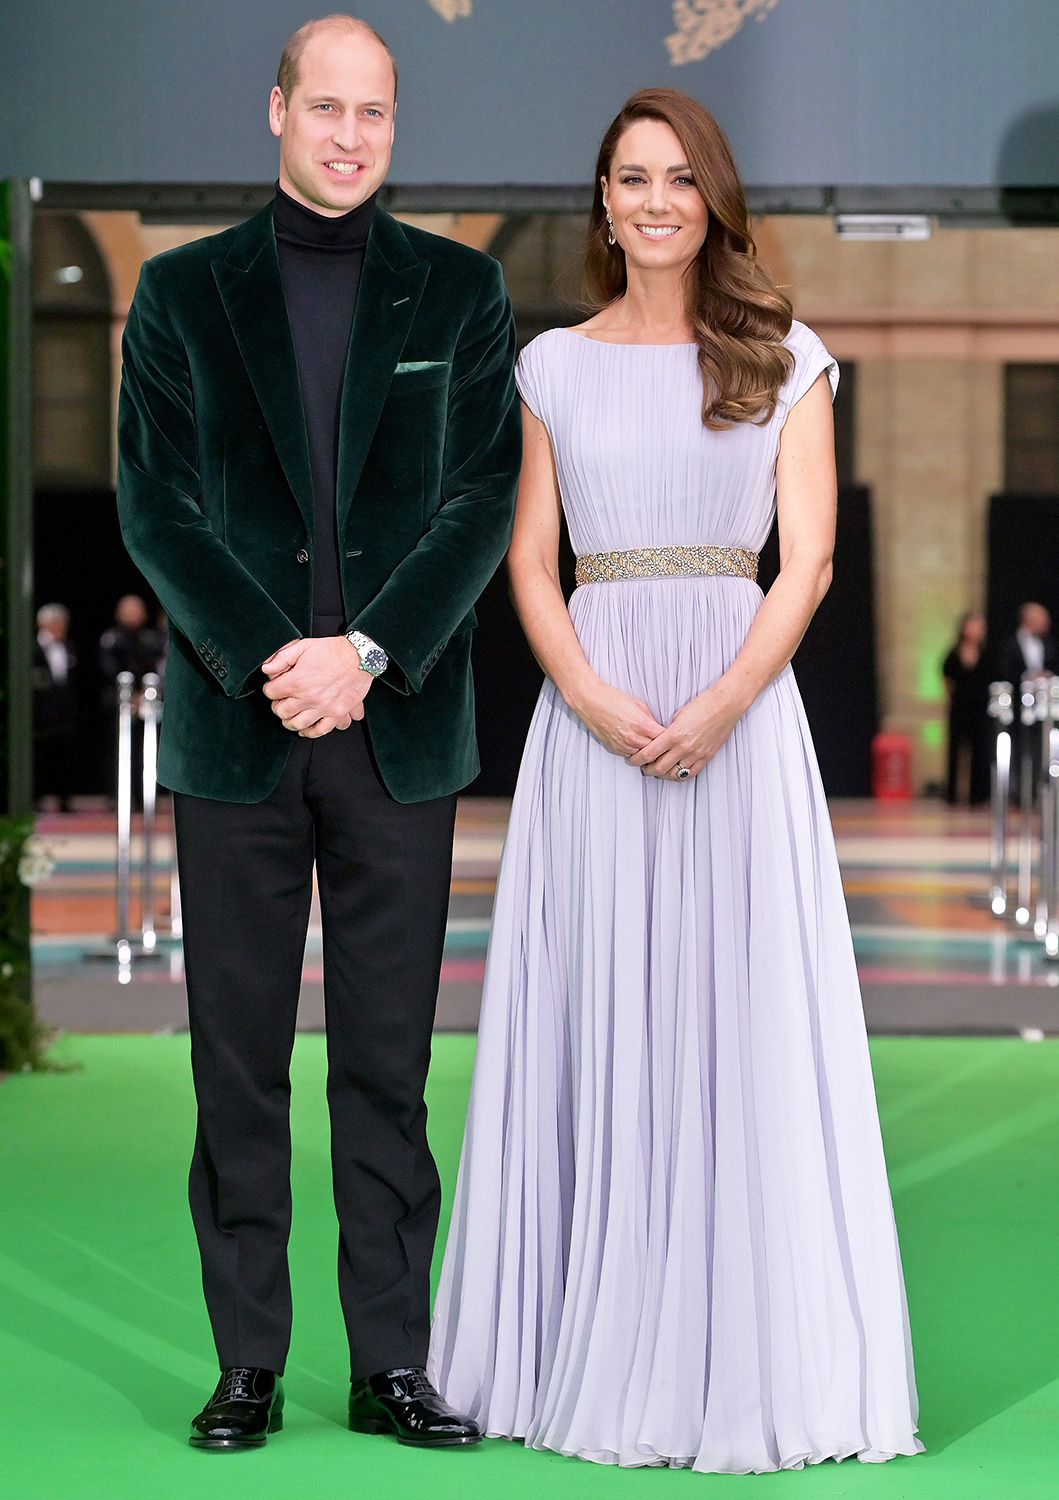 Tại sự kiện mới nhất, cặp đôi lại chứng minh mình không chỉ là cặp đôi quyền lực mà còn là cặp đôi thời trang. Hoàng tử William chọn cho mình một bộ suit nhung màu xanh đậm trong khi công nương Kate tinh tế trong chiếc váy tím pastel của Alexander McQueen. Điều thú vị là chiếc váy này đã được công nương diện vào 10 năm trước.